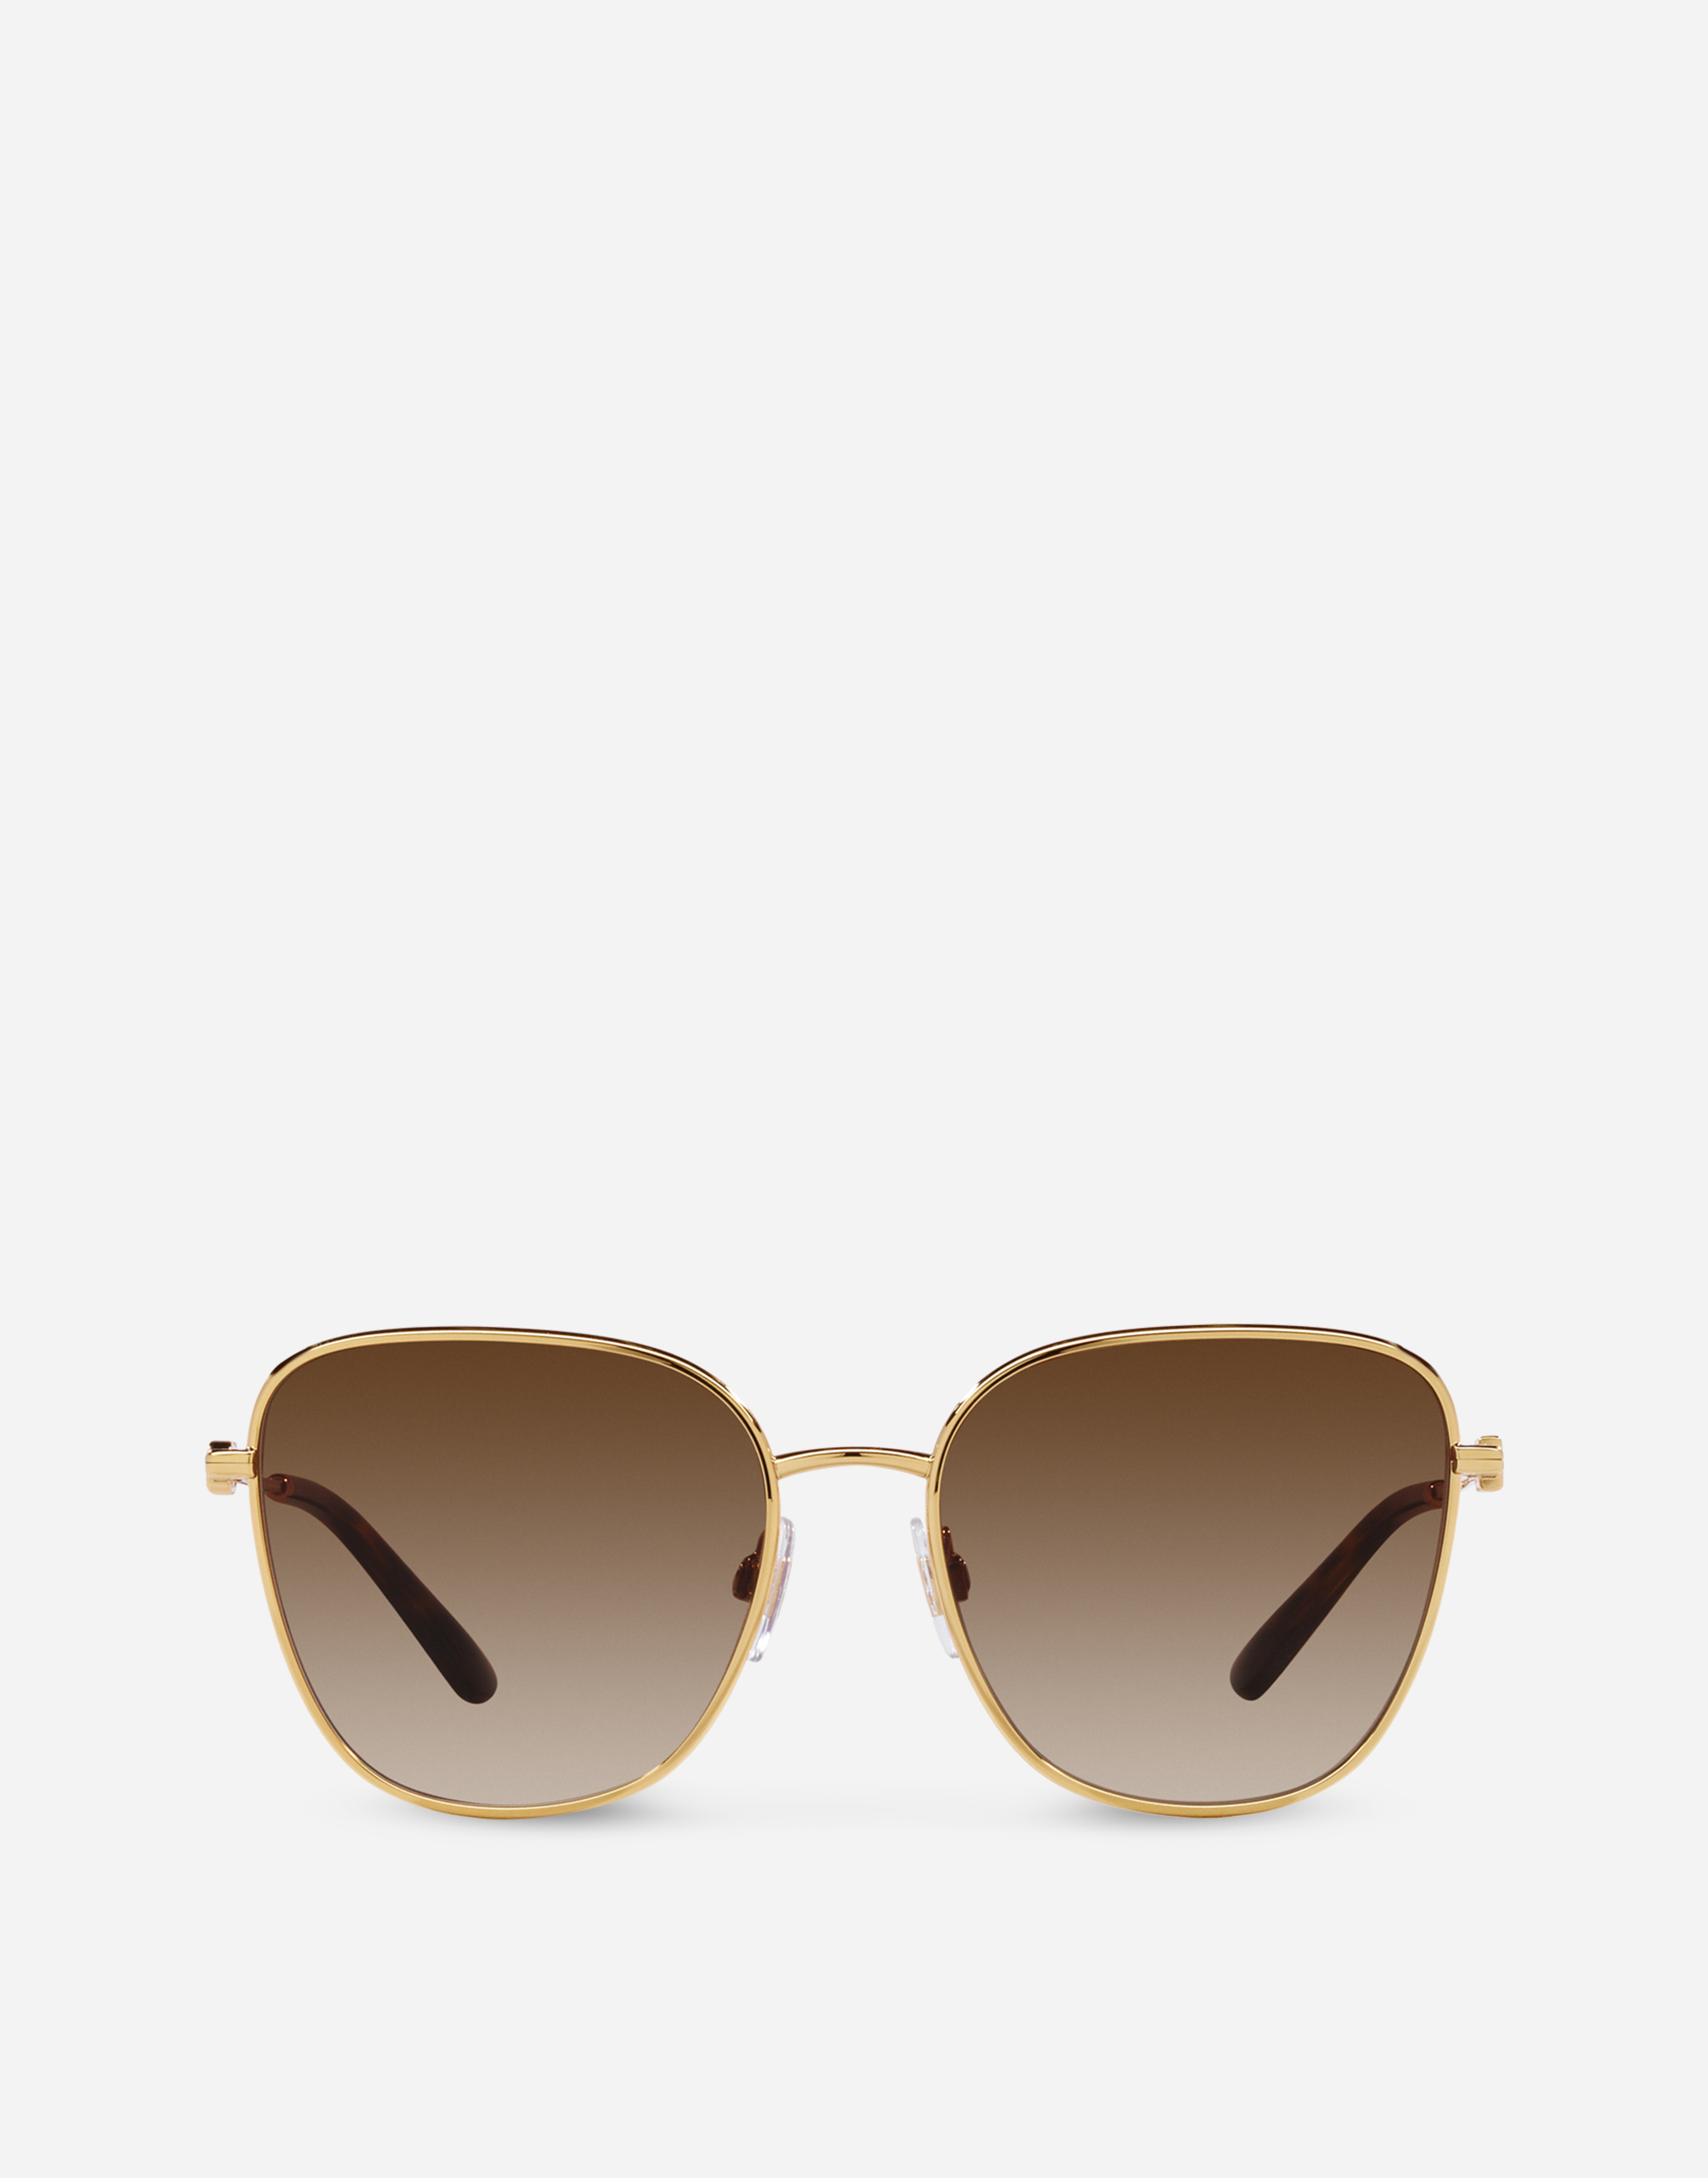 DG Light Sunglasses in Gold